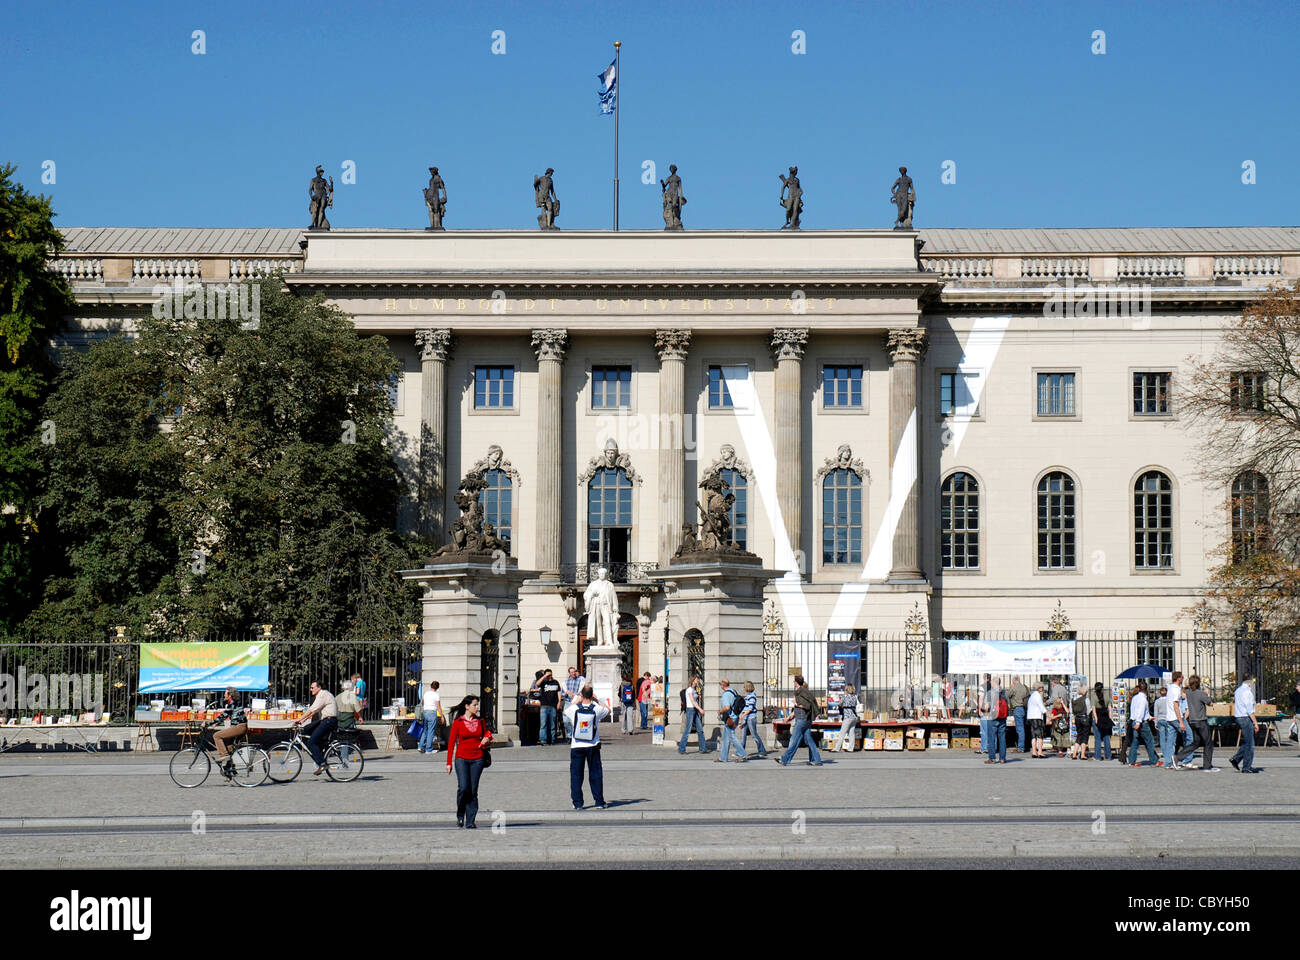 Humboldt university at the boulevard Unter den Linden in Berlin. Stock Photo